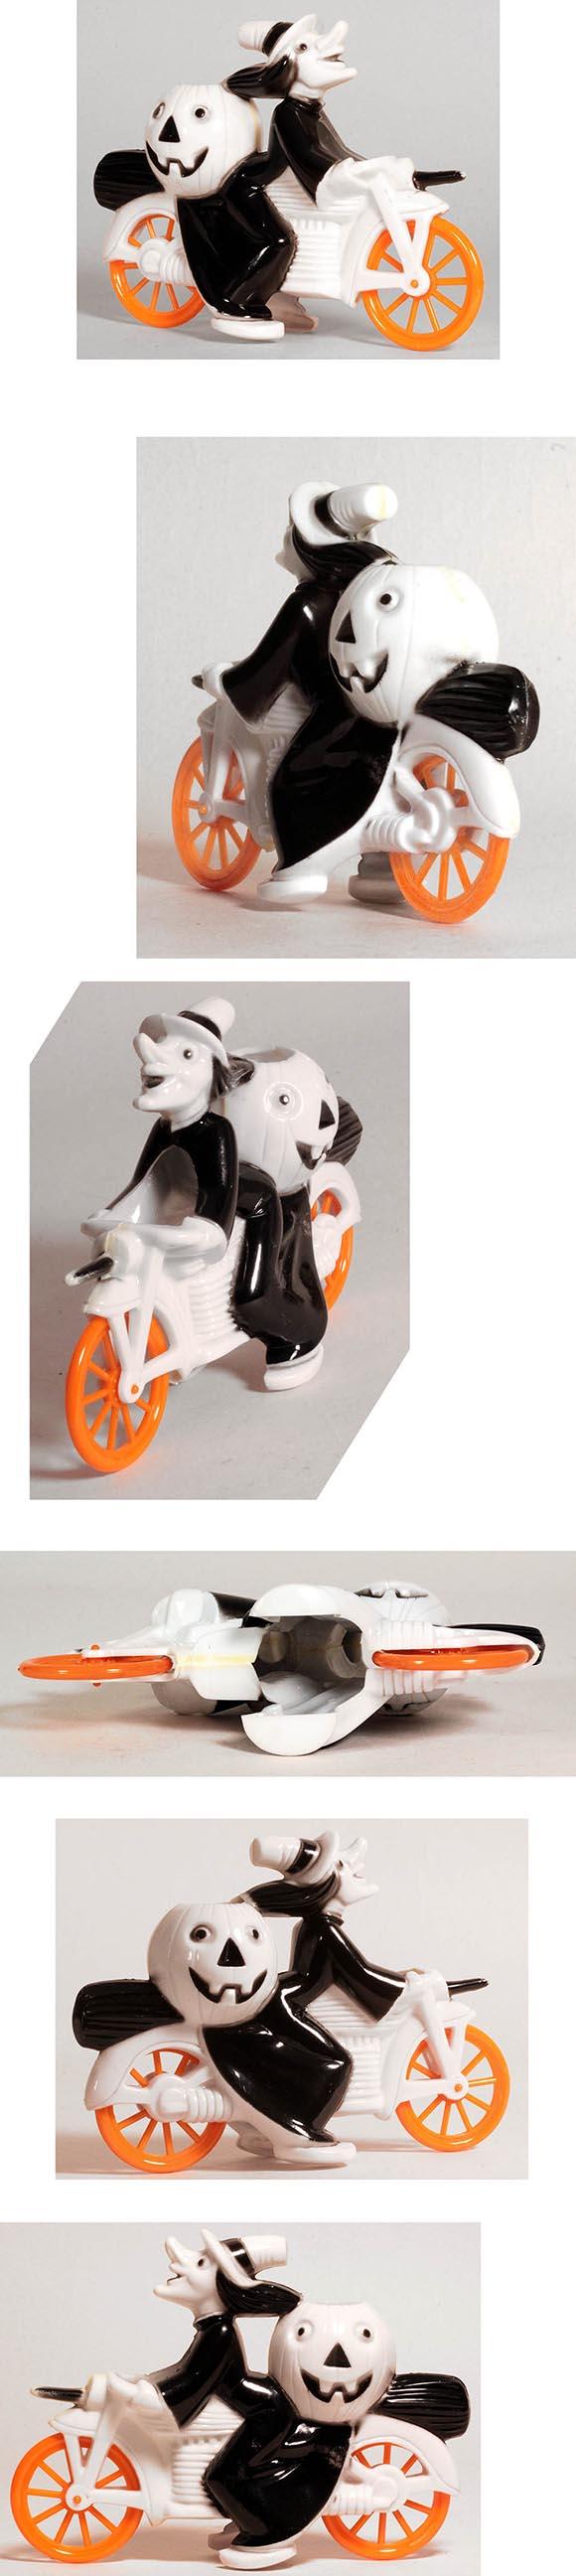 c.1952 Tico Toys/Rosbro, Black Halloween Witch on White Motorcycle